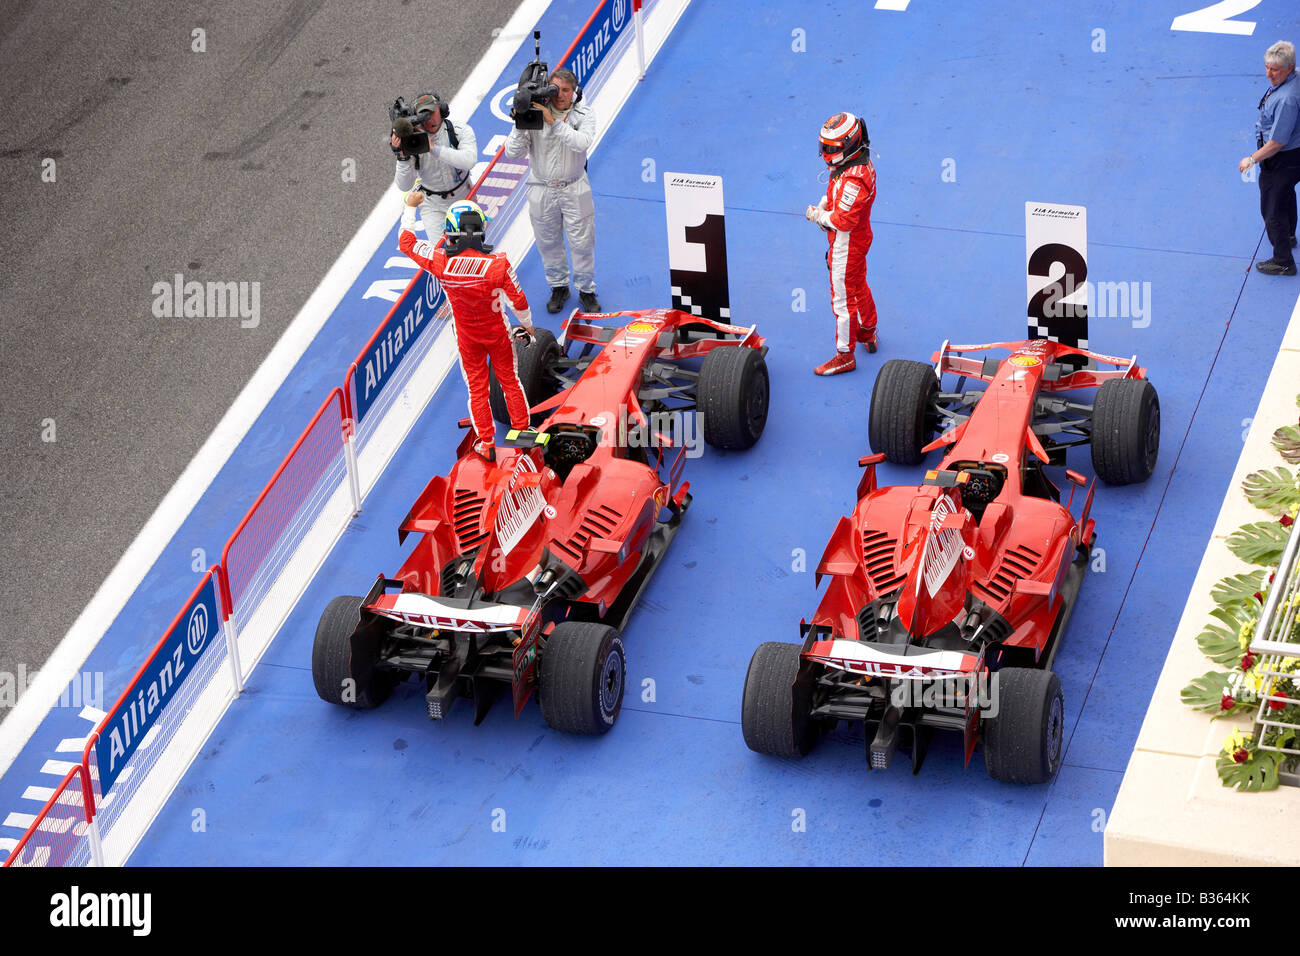 Felipe Massa per la Ferrari celebra la vittoria nella sua auto dopo il 2008 Bahrain Grand Prix di Formula 1 con Kimi Raikkonen. Foto Stock